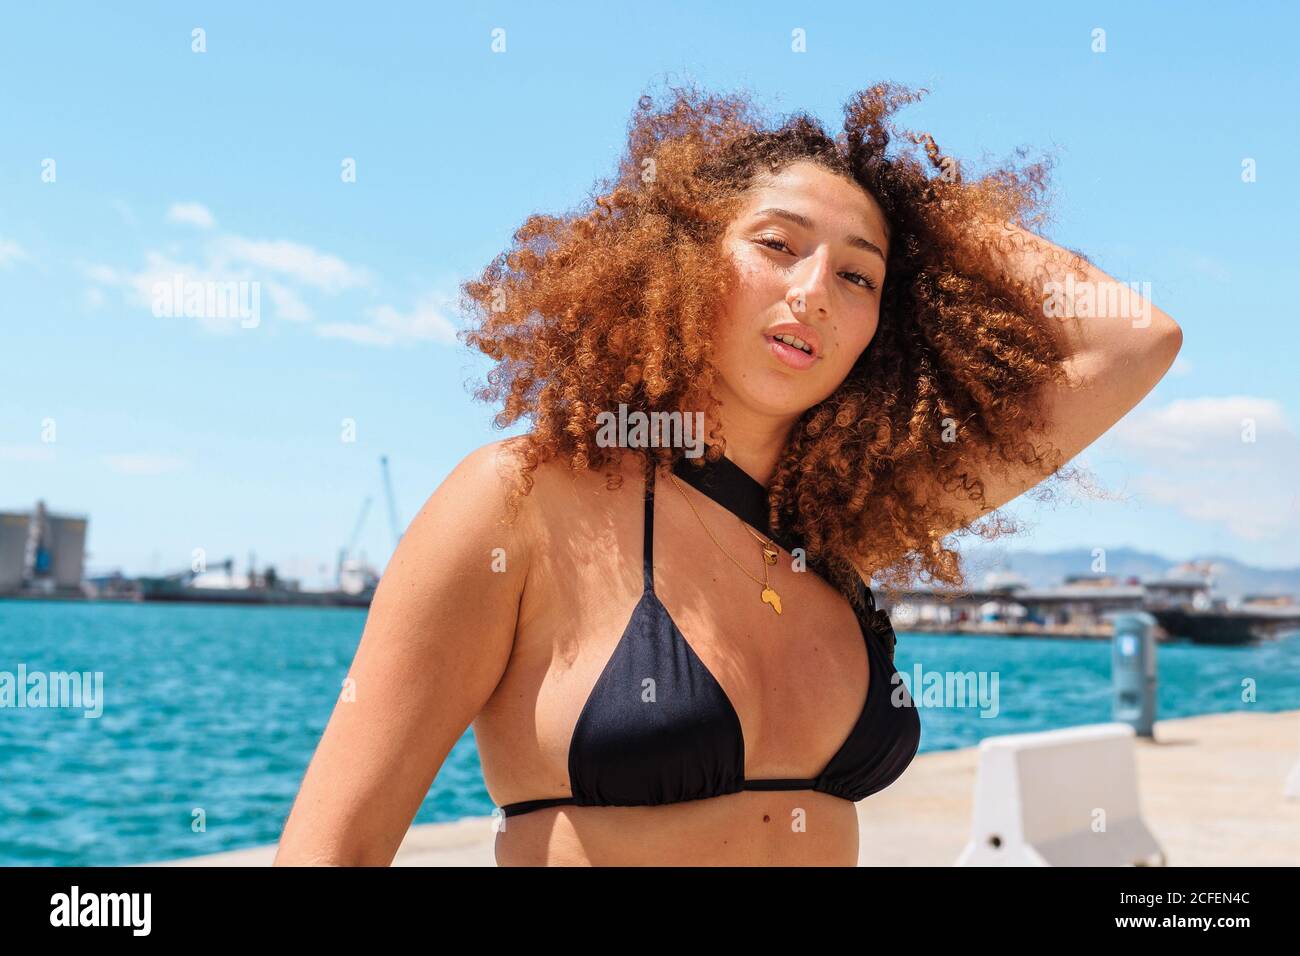 Von unten Inhalt weiblich in Bikini-Top genießen Sommer An sonnigen Tagen und Blick auf die Kamera Stockfoto